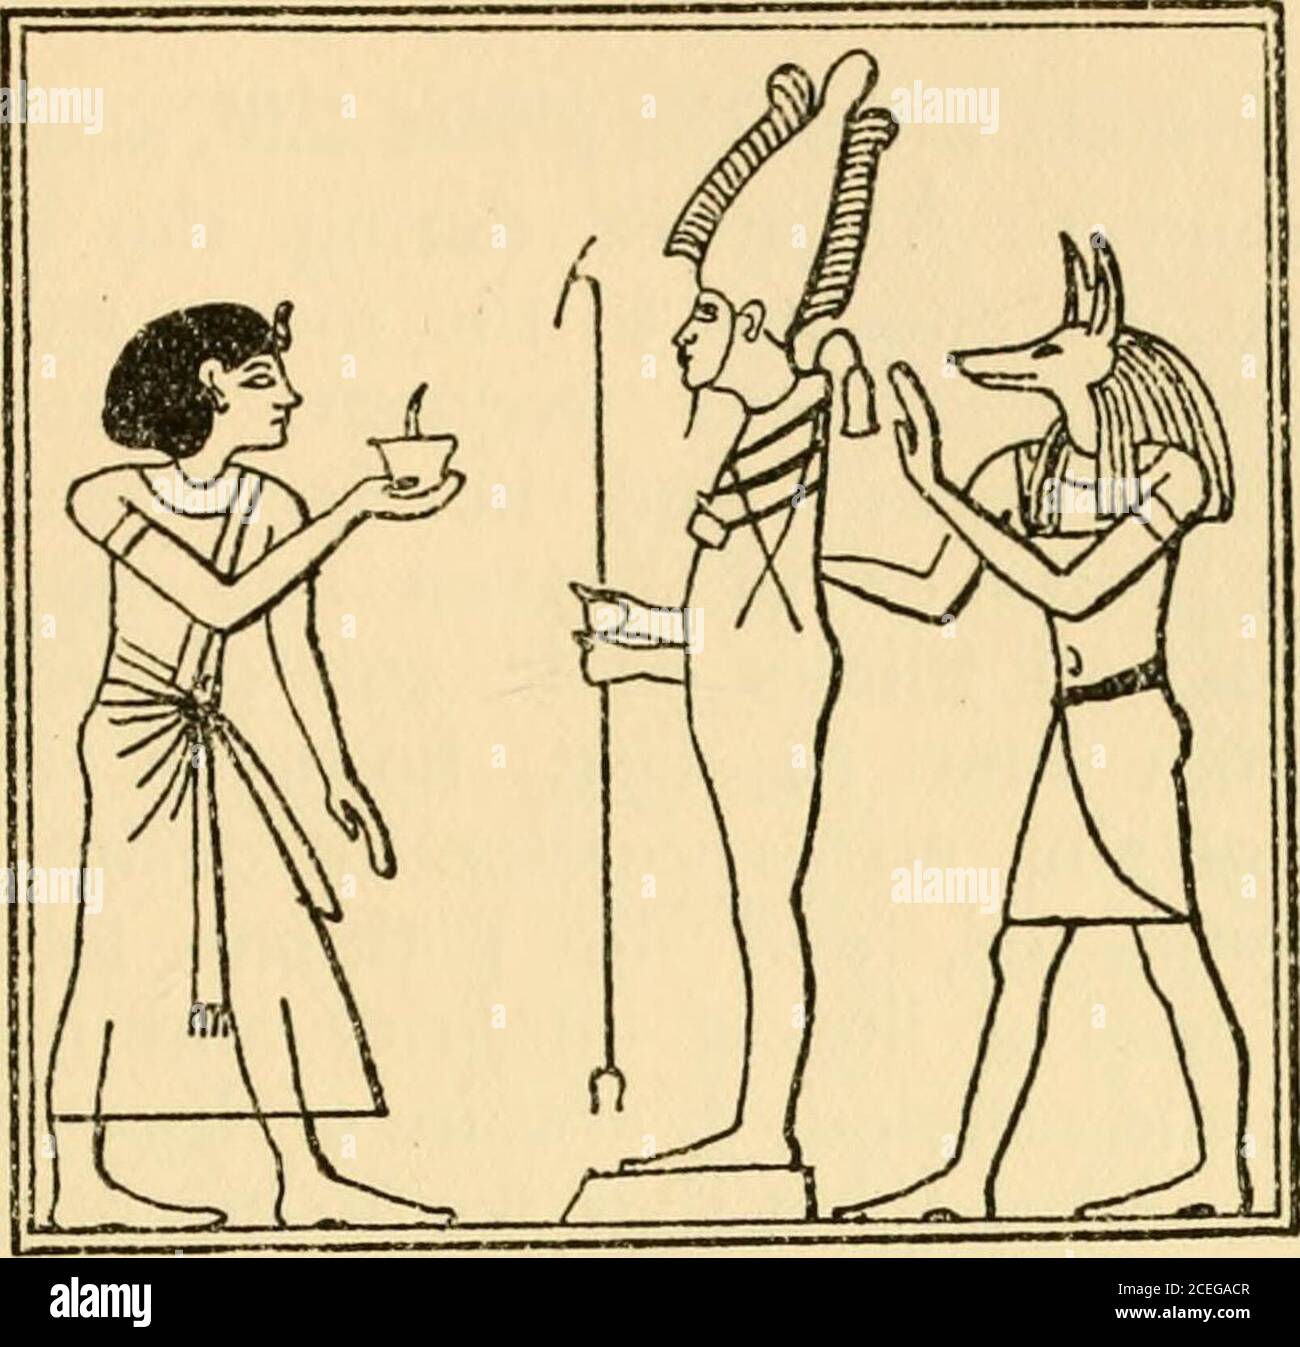 Osiris y la resurrección egipcia;. Amén de Tebas, Horus de Edfu, Menthu de  Hermonthis, Osiris de Abydos, Heru-shefit de Herakleopolis, Ptah de  Memphis, Temu de Heliópolis, la diosa Bast de Bubatis,